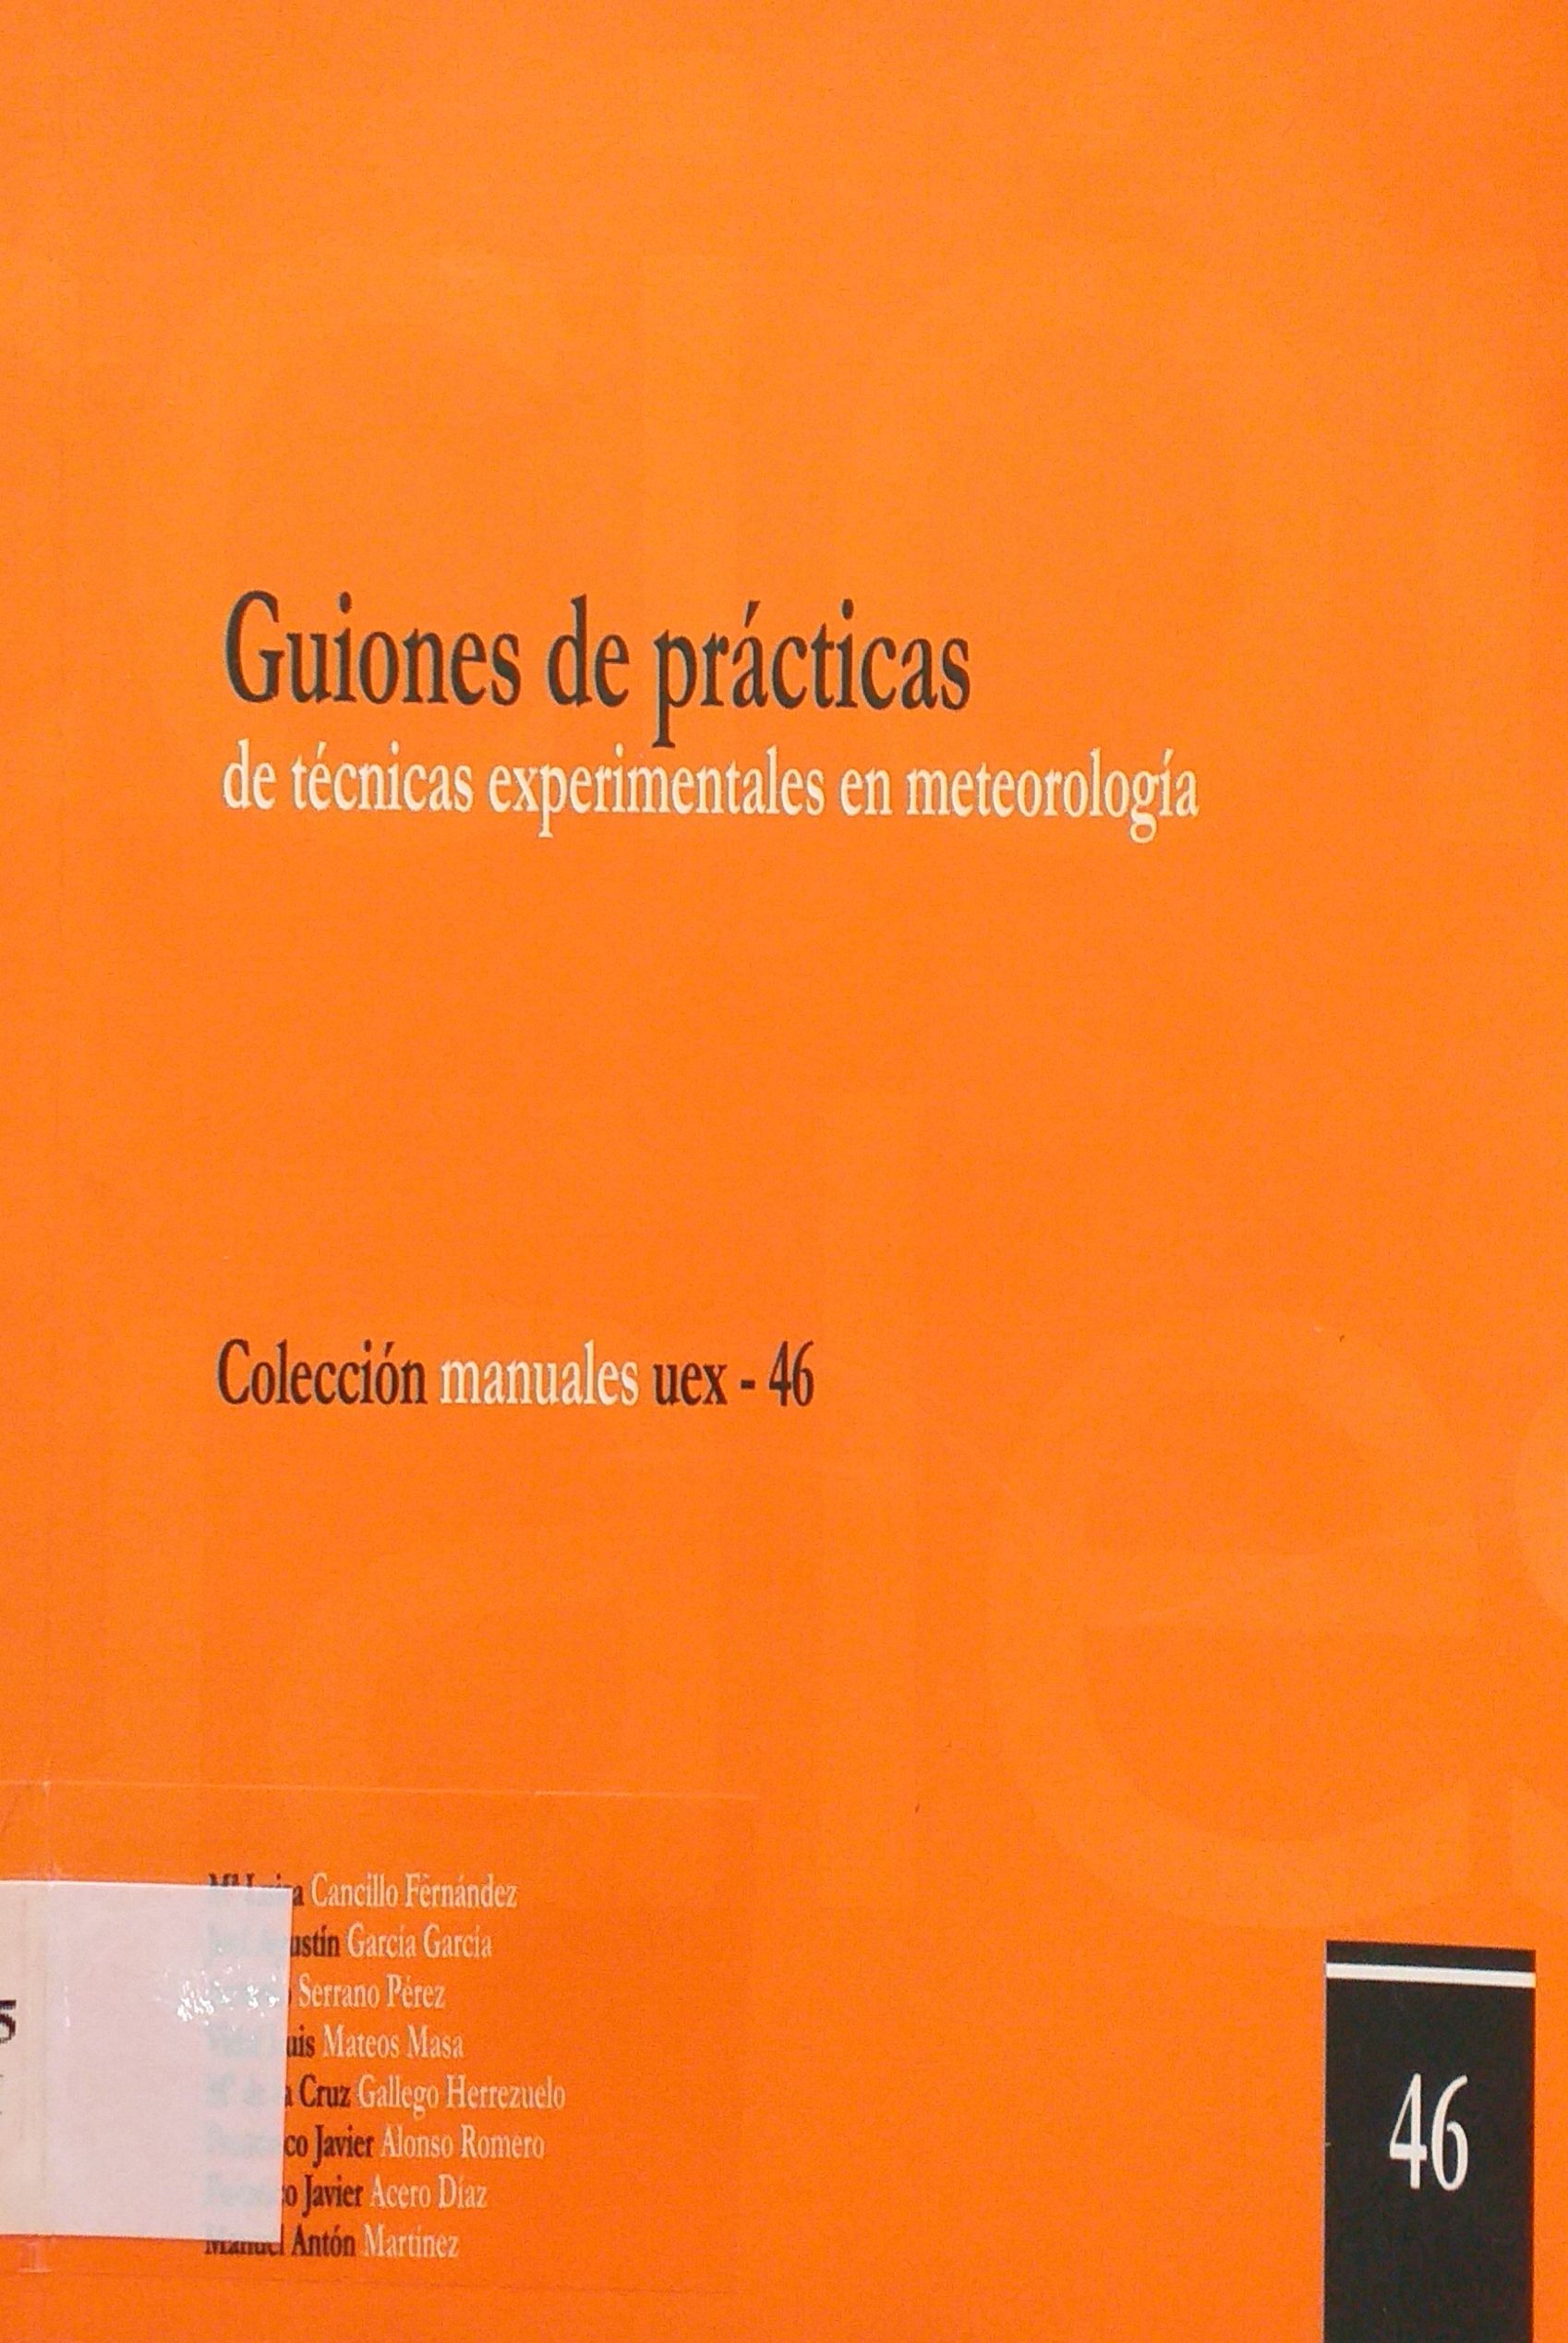 Imagen de portada del libro Guiones de prácticas de técnicas experimentales en meteorología